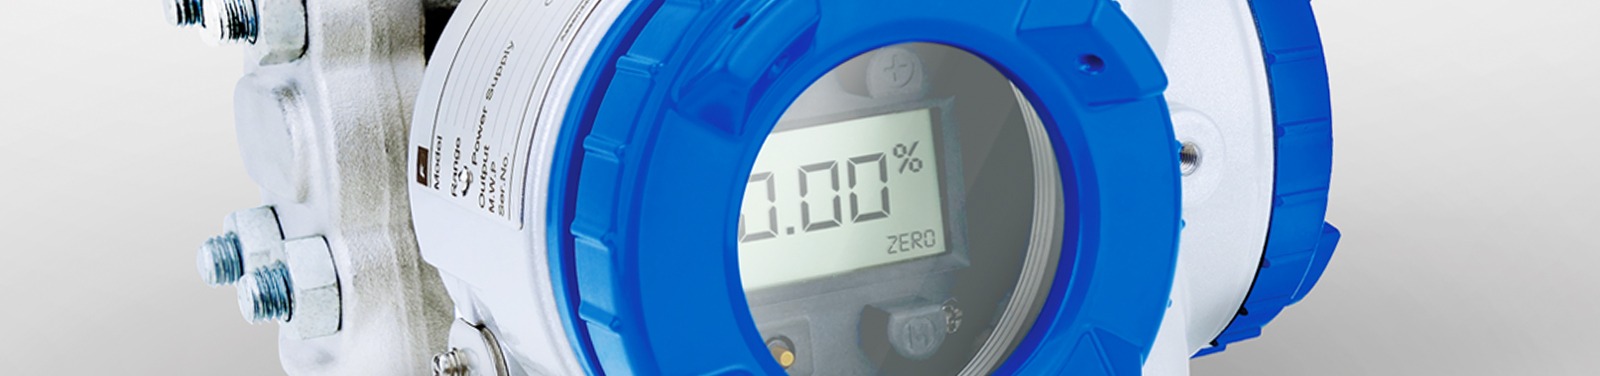 os sensores de pressão podem ser equipados com um indicador digital 